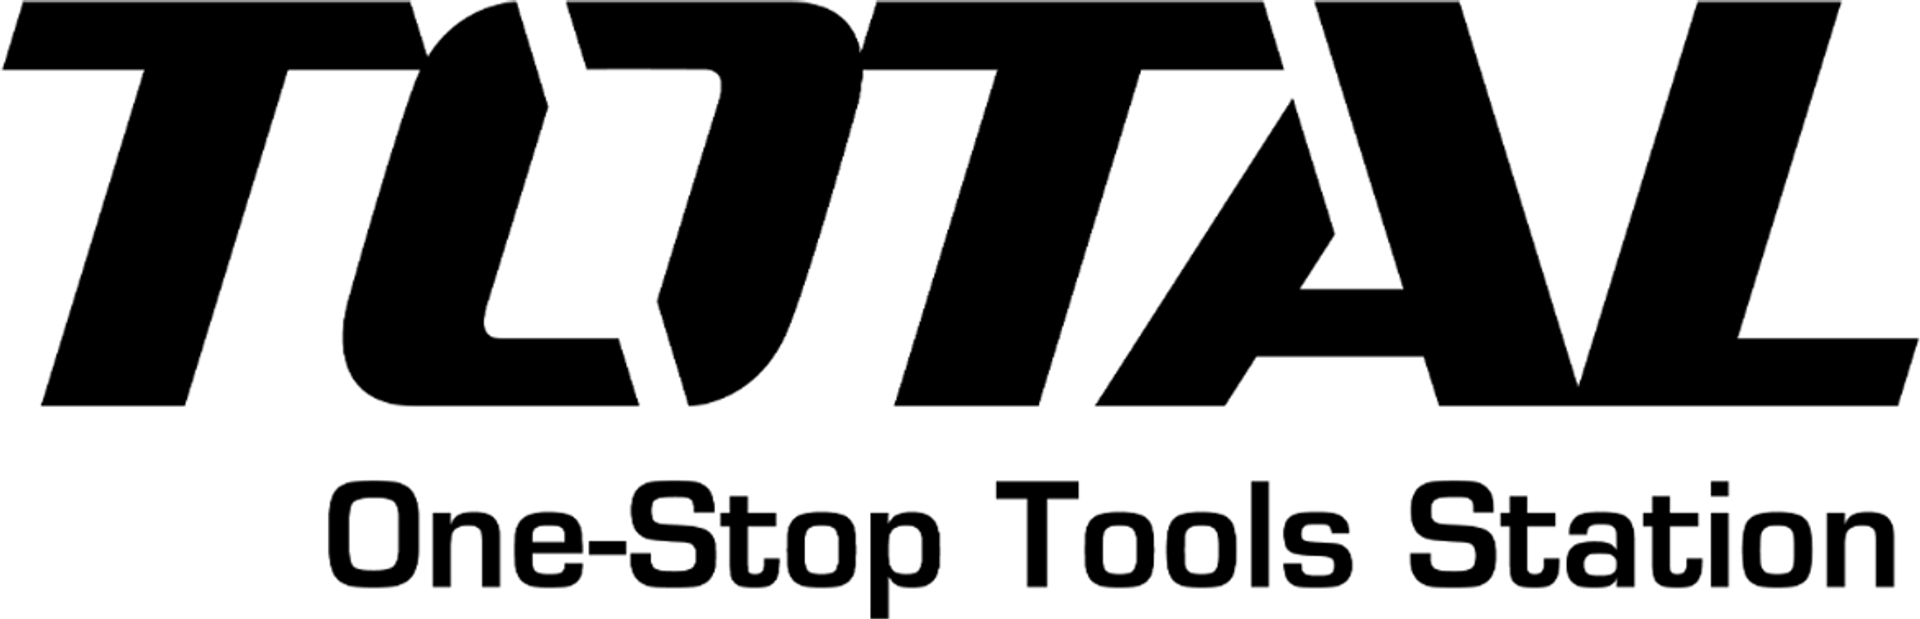 TOTAL HERRAMIENTAS logo